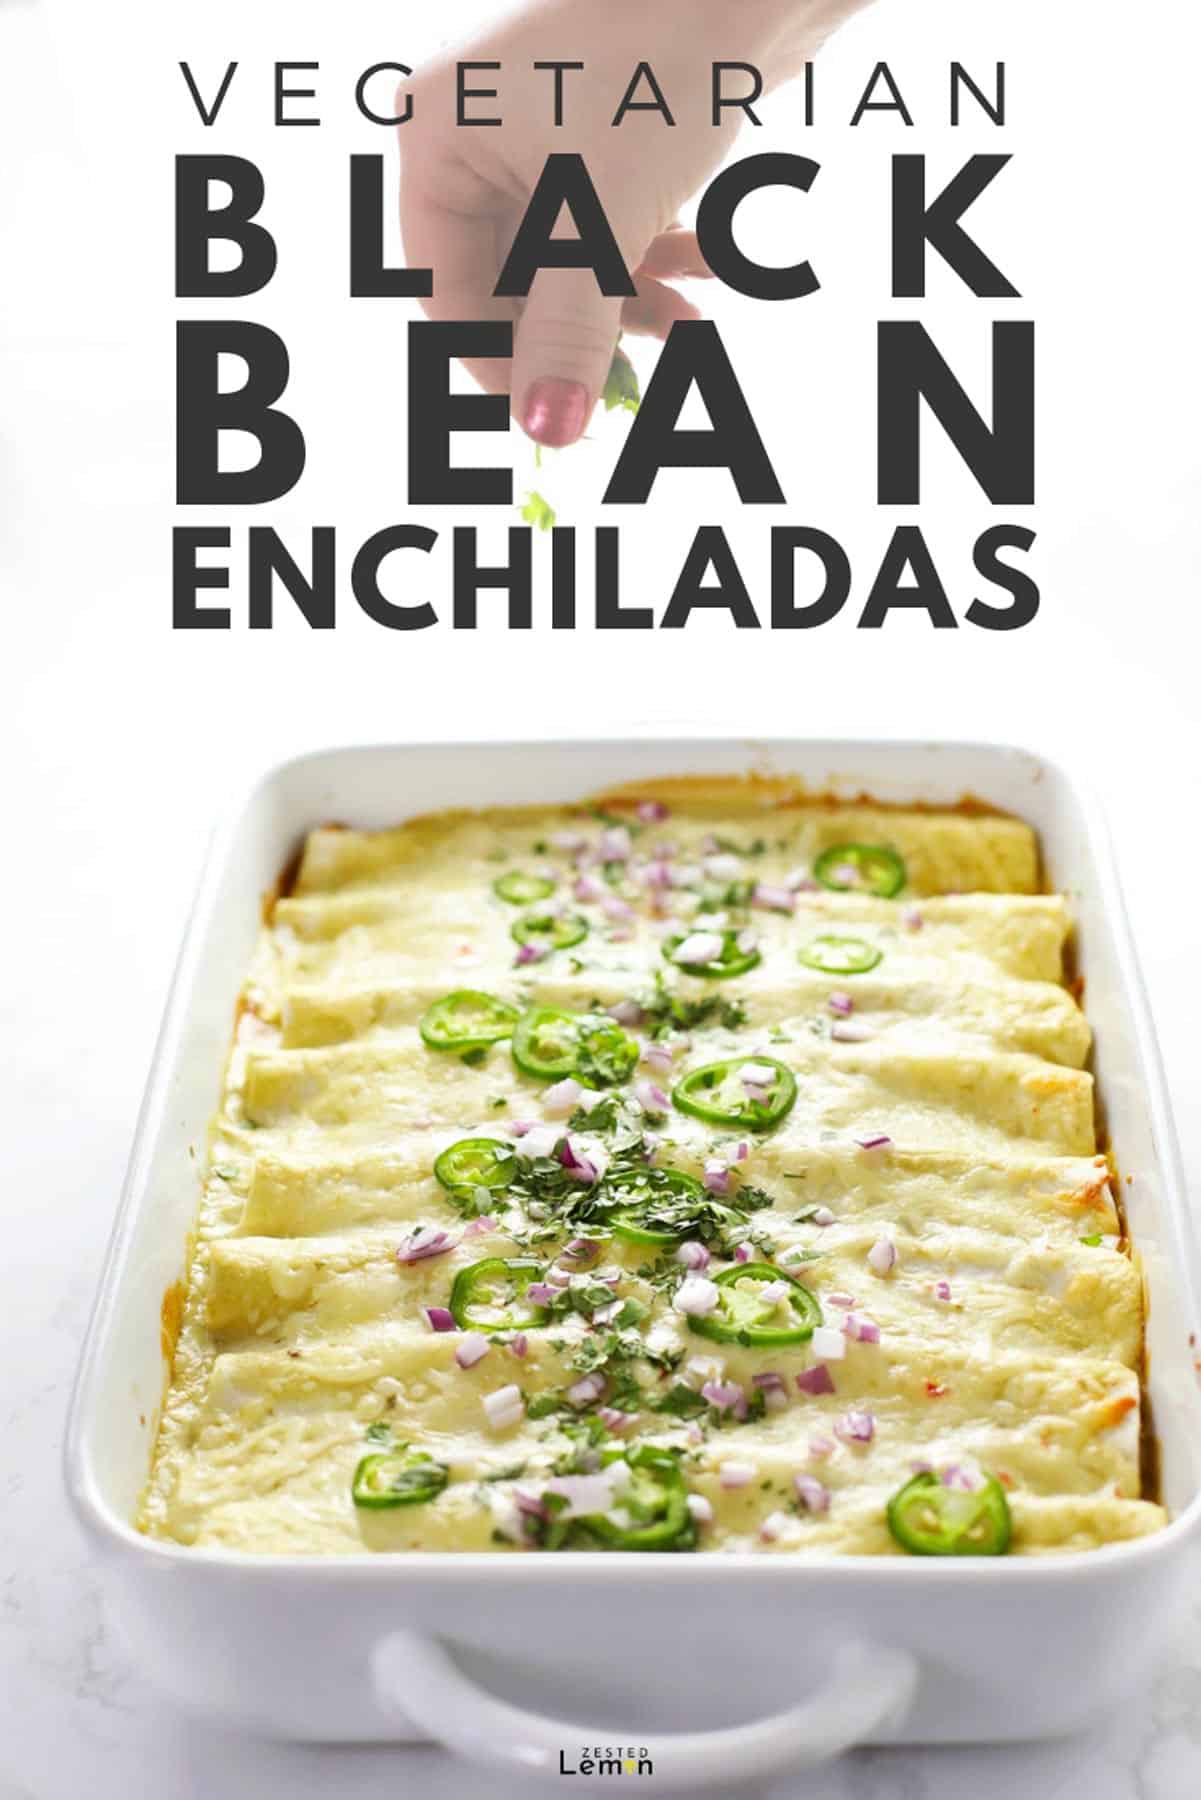 Vegetarian Black Bean Enchiladas - Zested Lemon